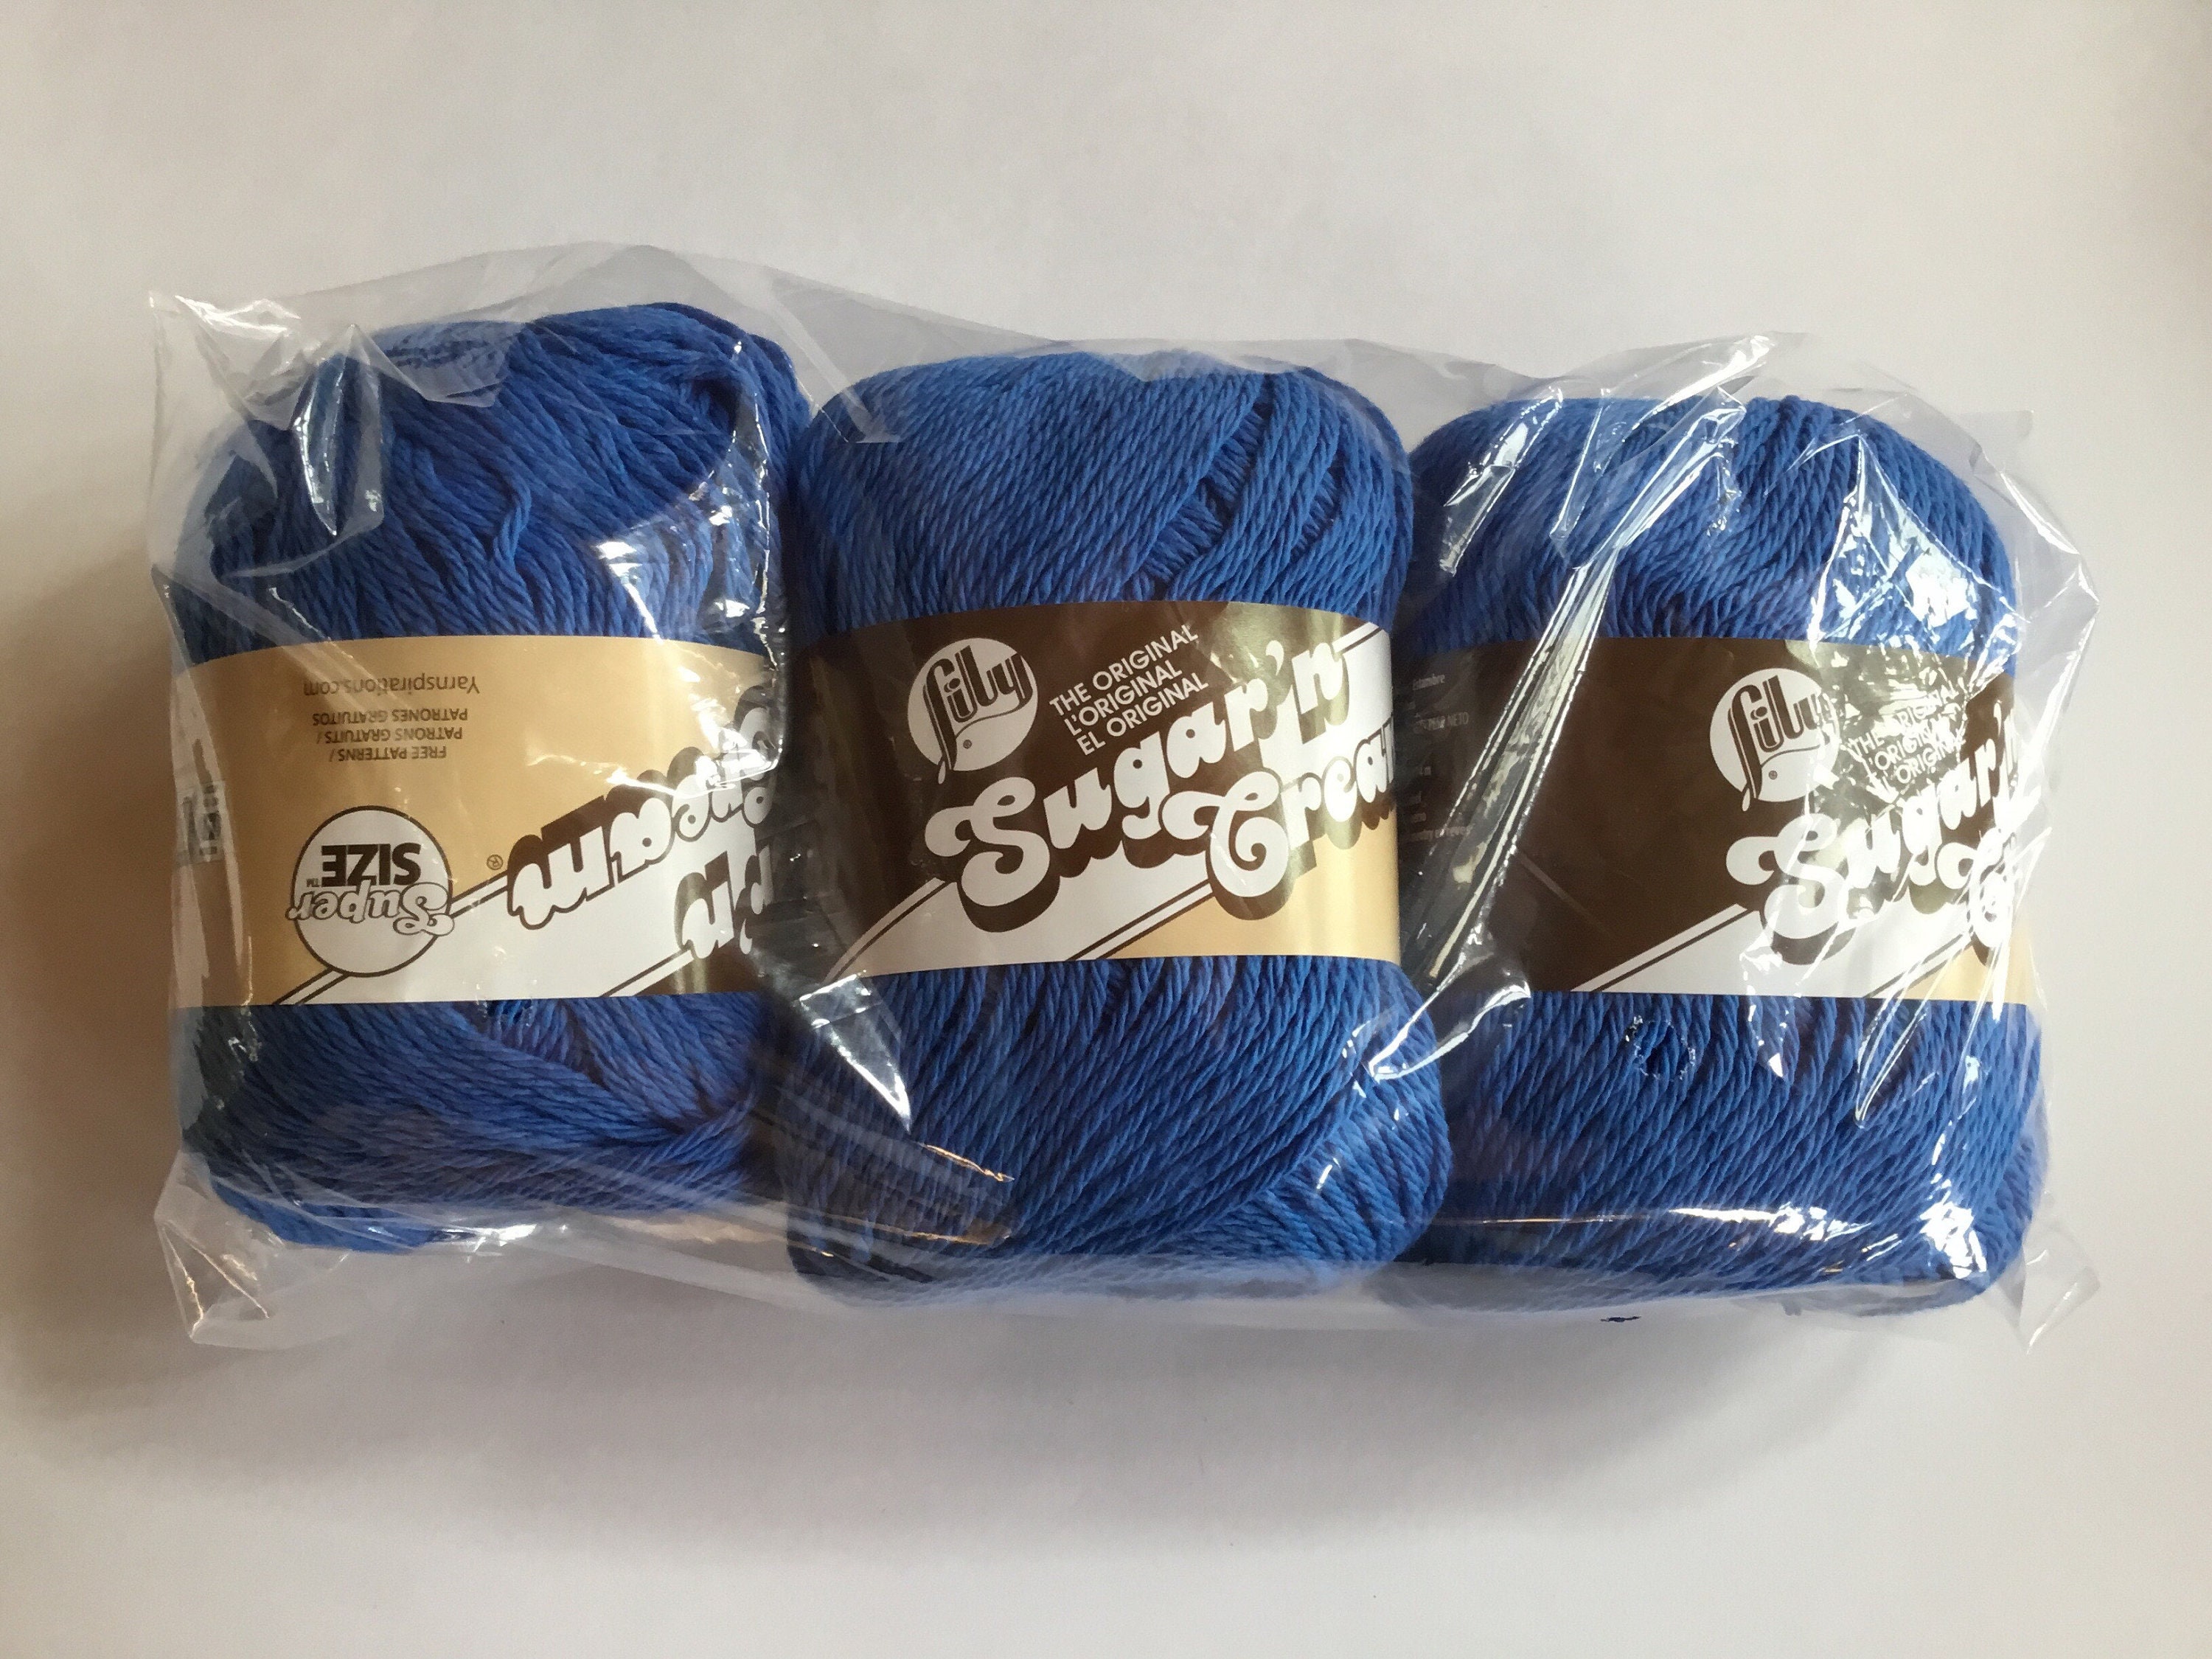 Lily Sugar'n Cream Super Size 4 Medium Cotton Yarn, Black 4oz/113g, 200  Yards